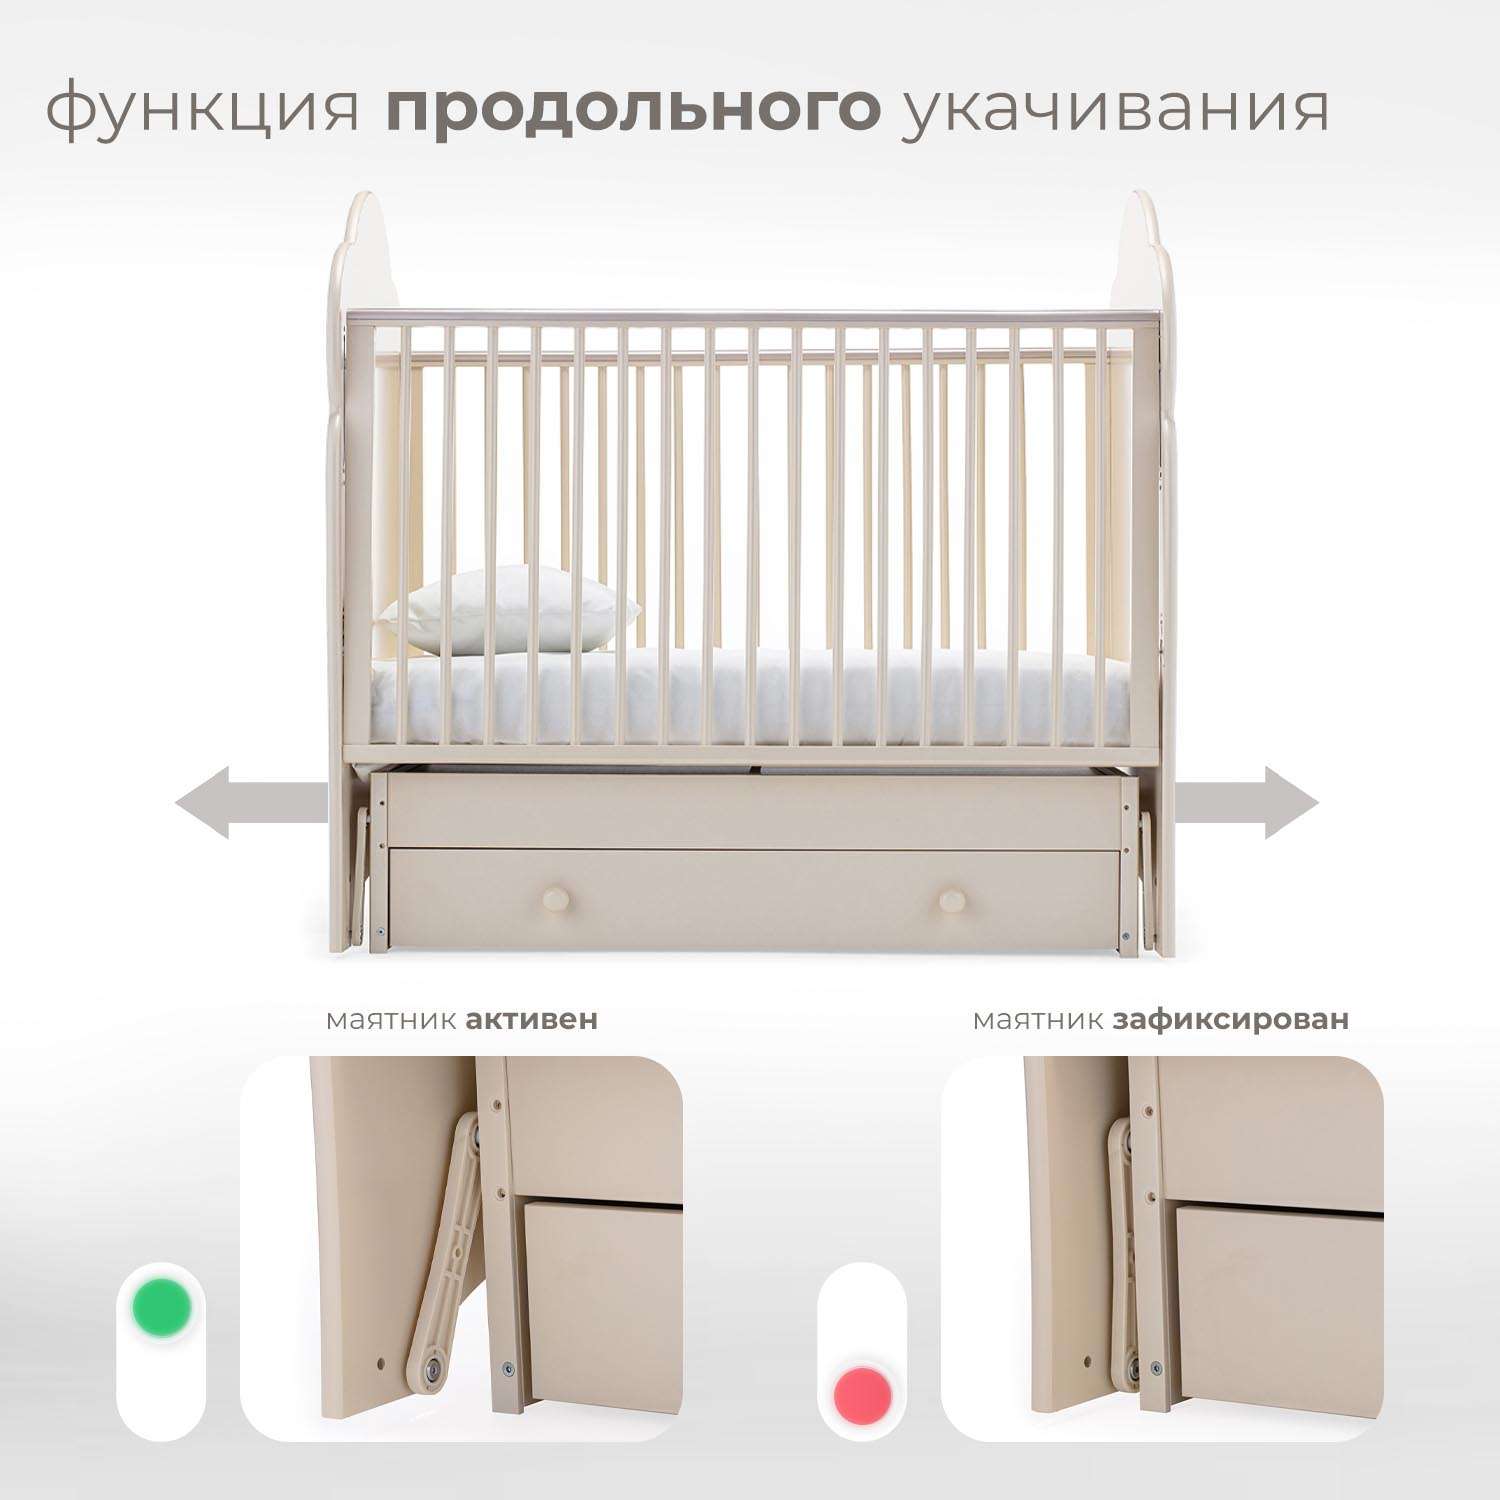 Детская кроватка Nuovita Fortuna Swing прямоугольная, поперечный маятник (слоновая кость) - фото 4